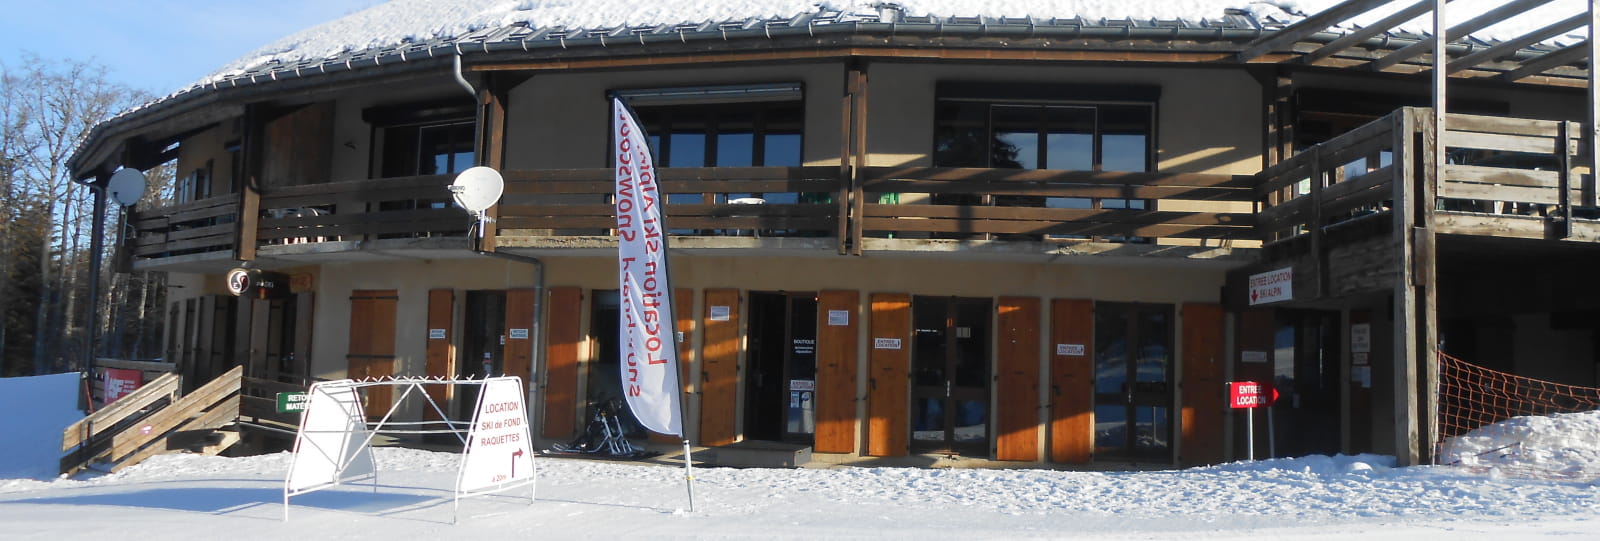 Ski Truck Font d'Urle - Chaud Clapier